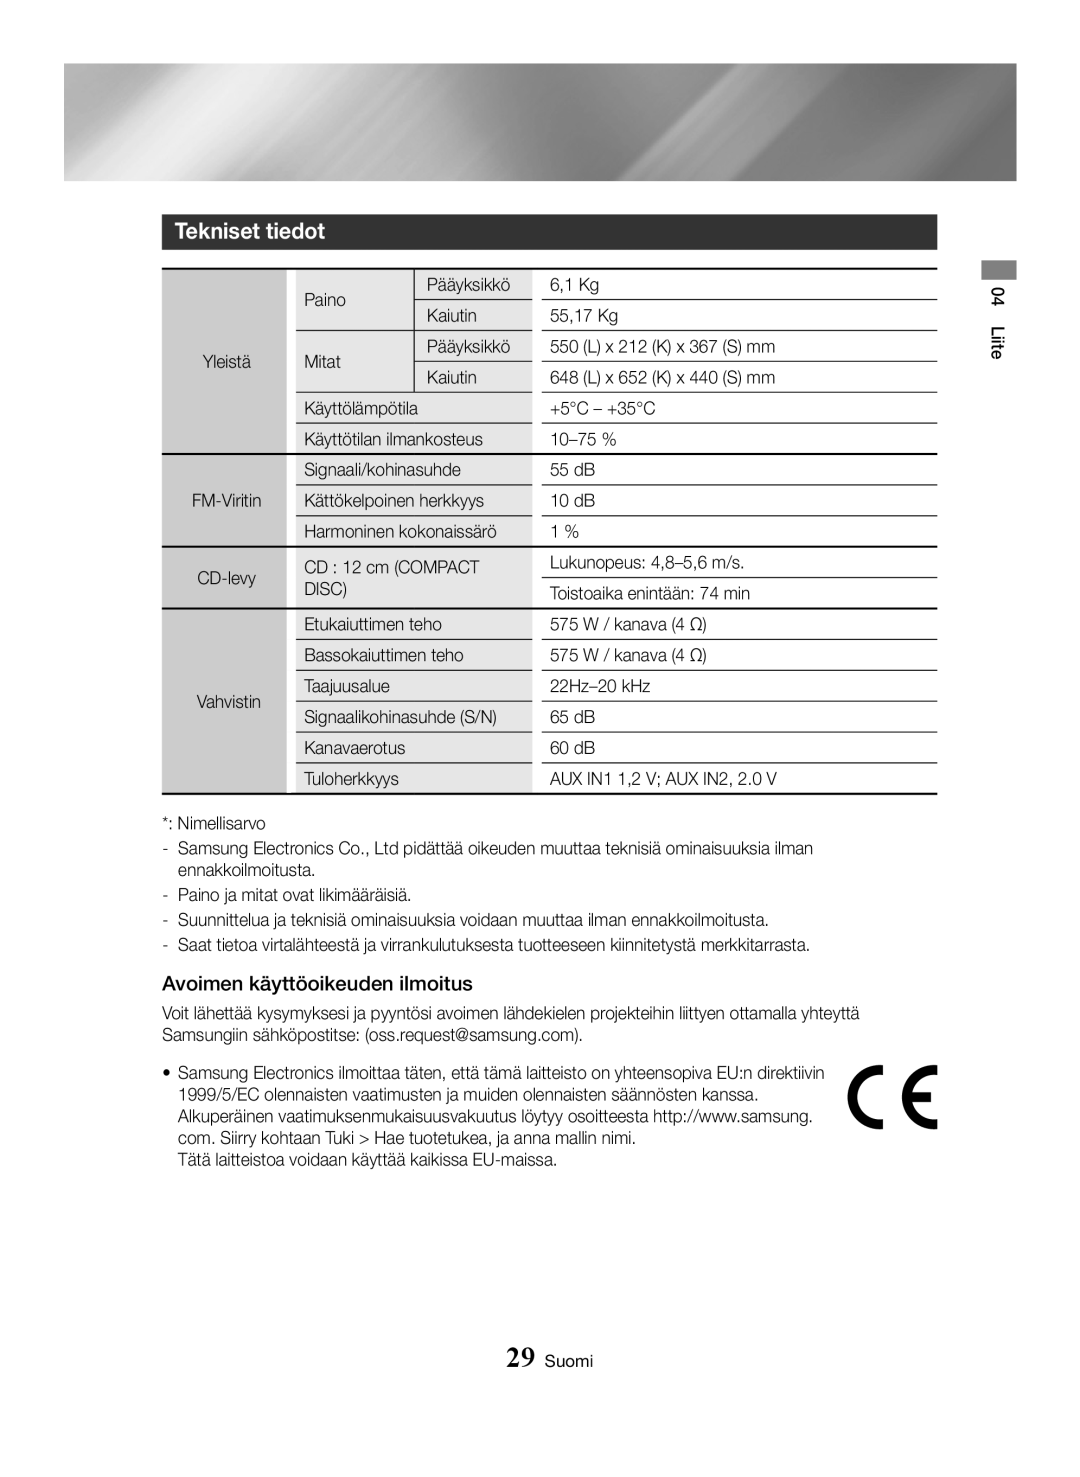 Samsung MX-HS8000/ZF, MX-HS8000/EN manual Tekniset tiedot, Avoimen käyttöoikeuden ilmoitus 